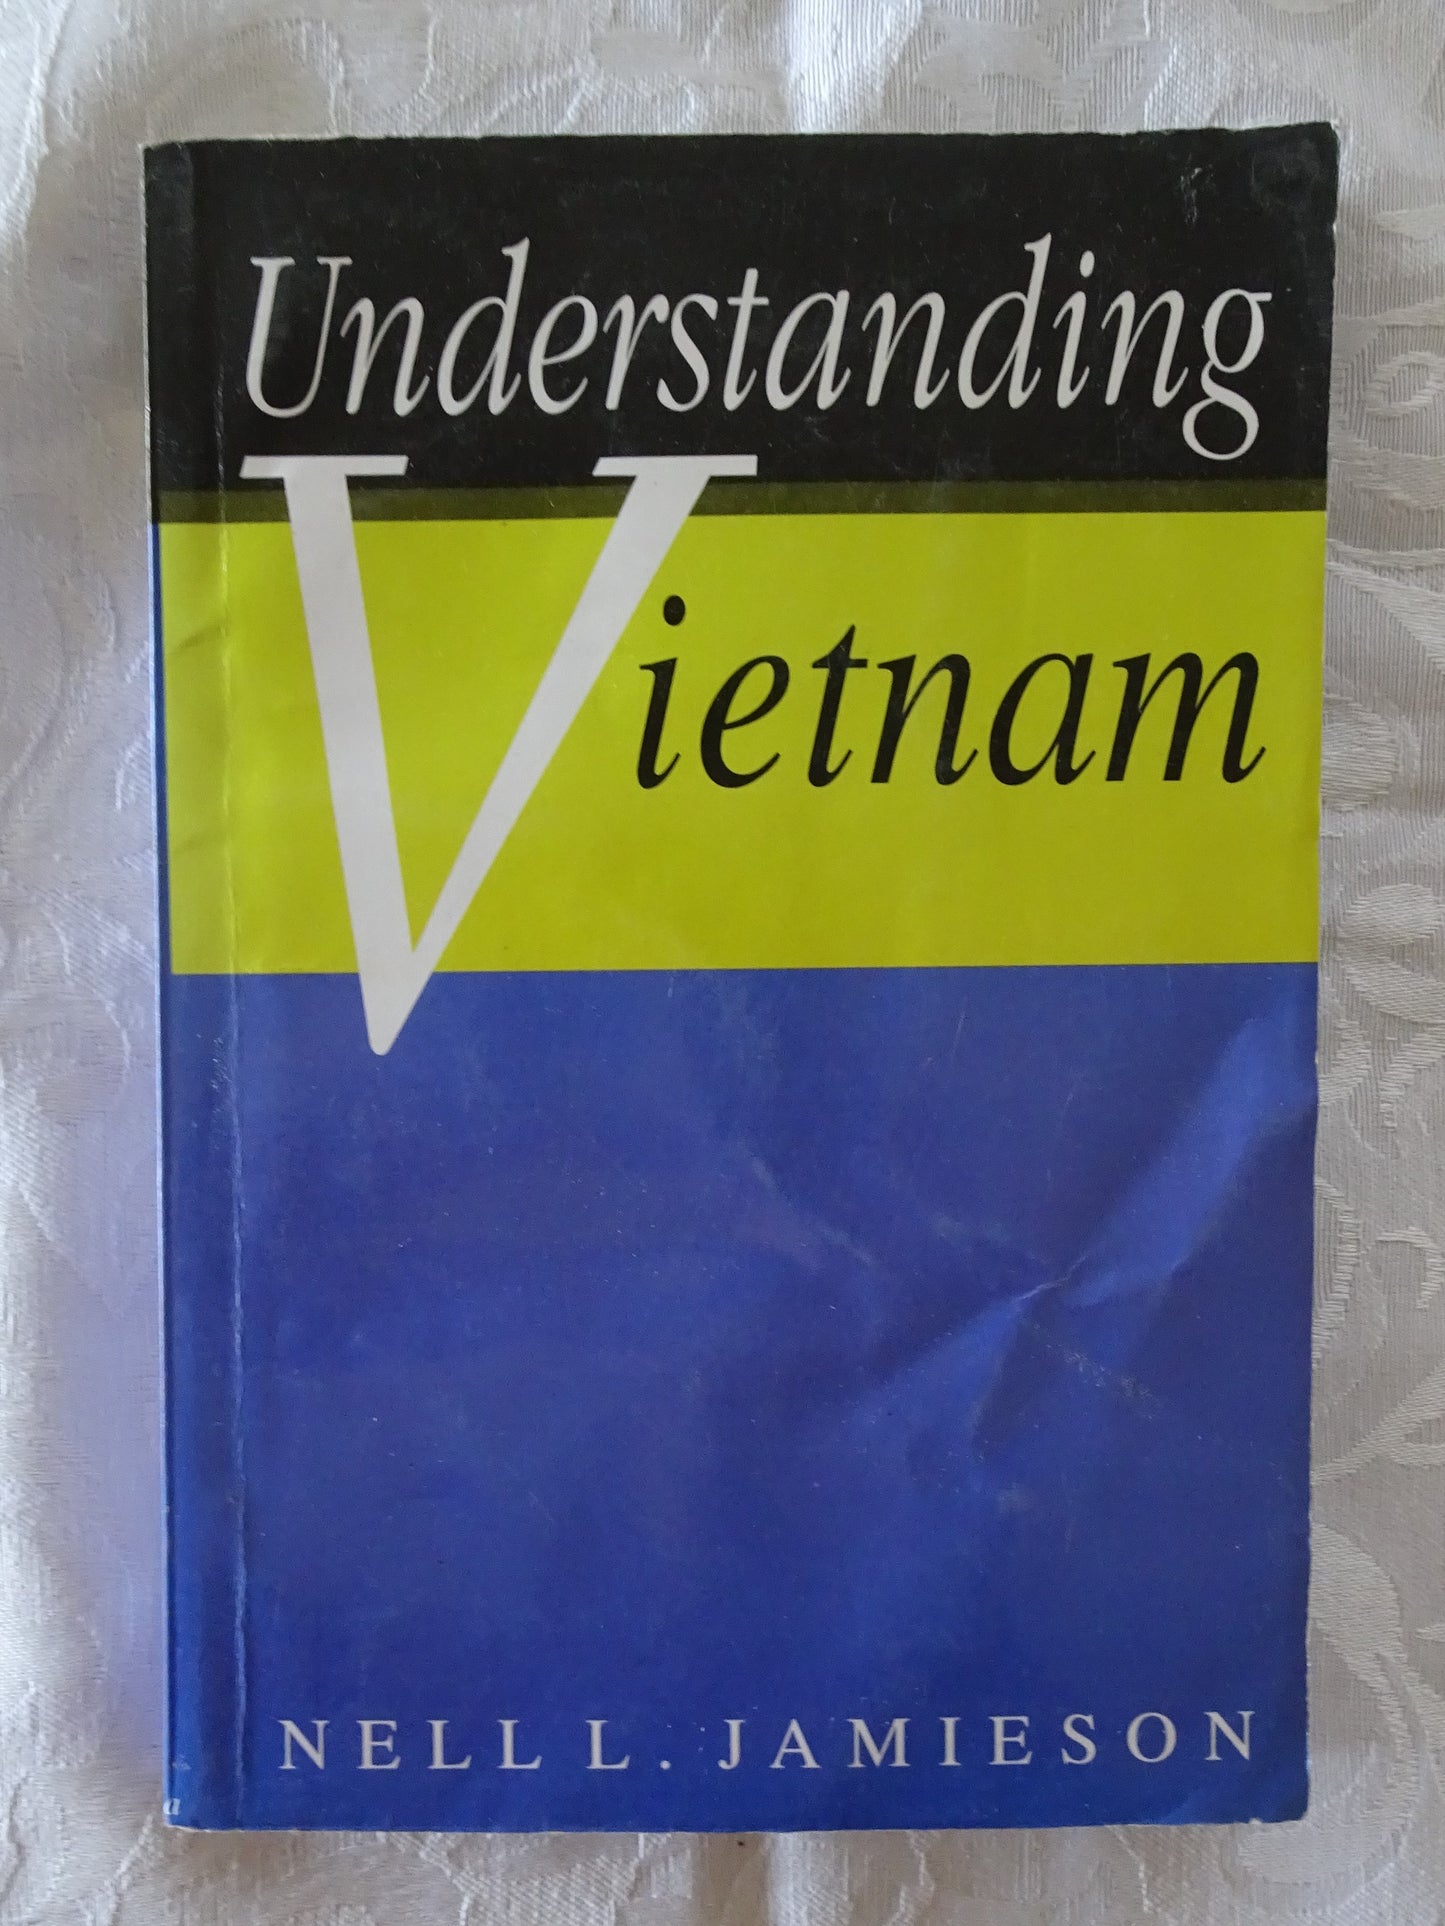 Understanding Vietnam by Nell L. Jamieson